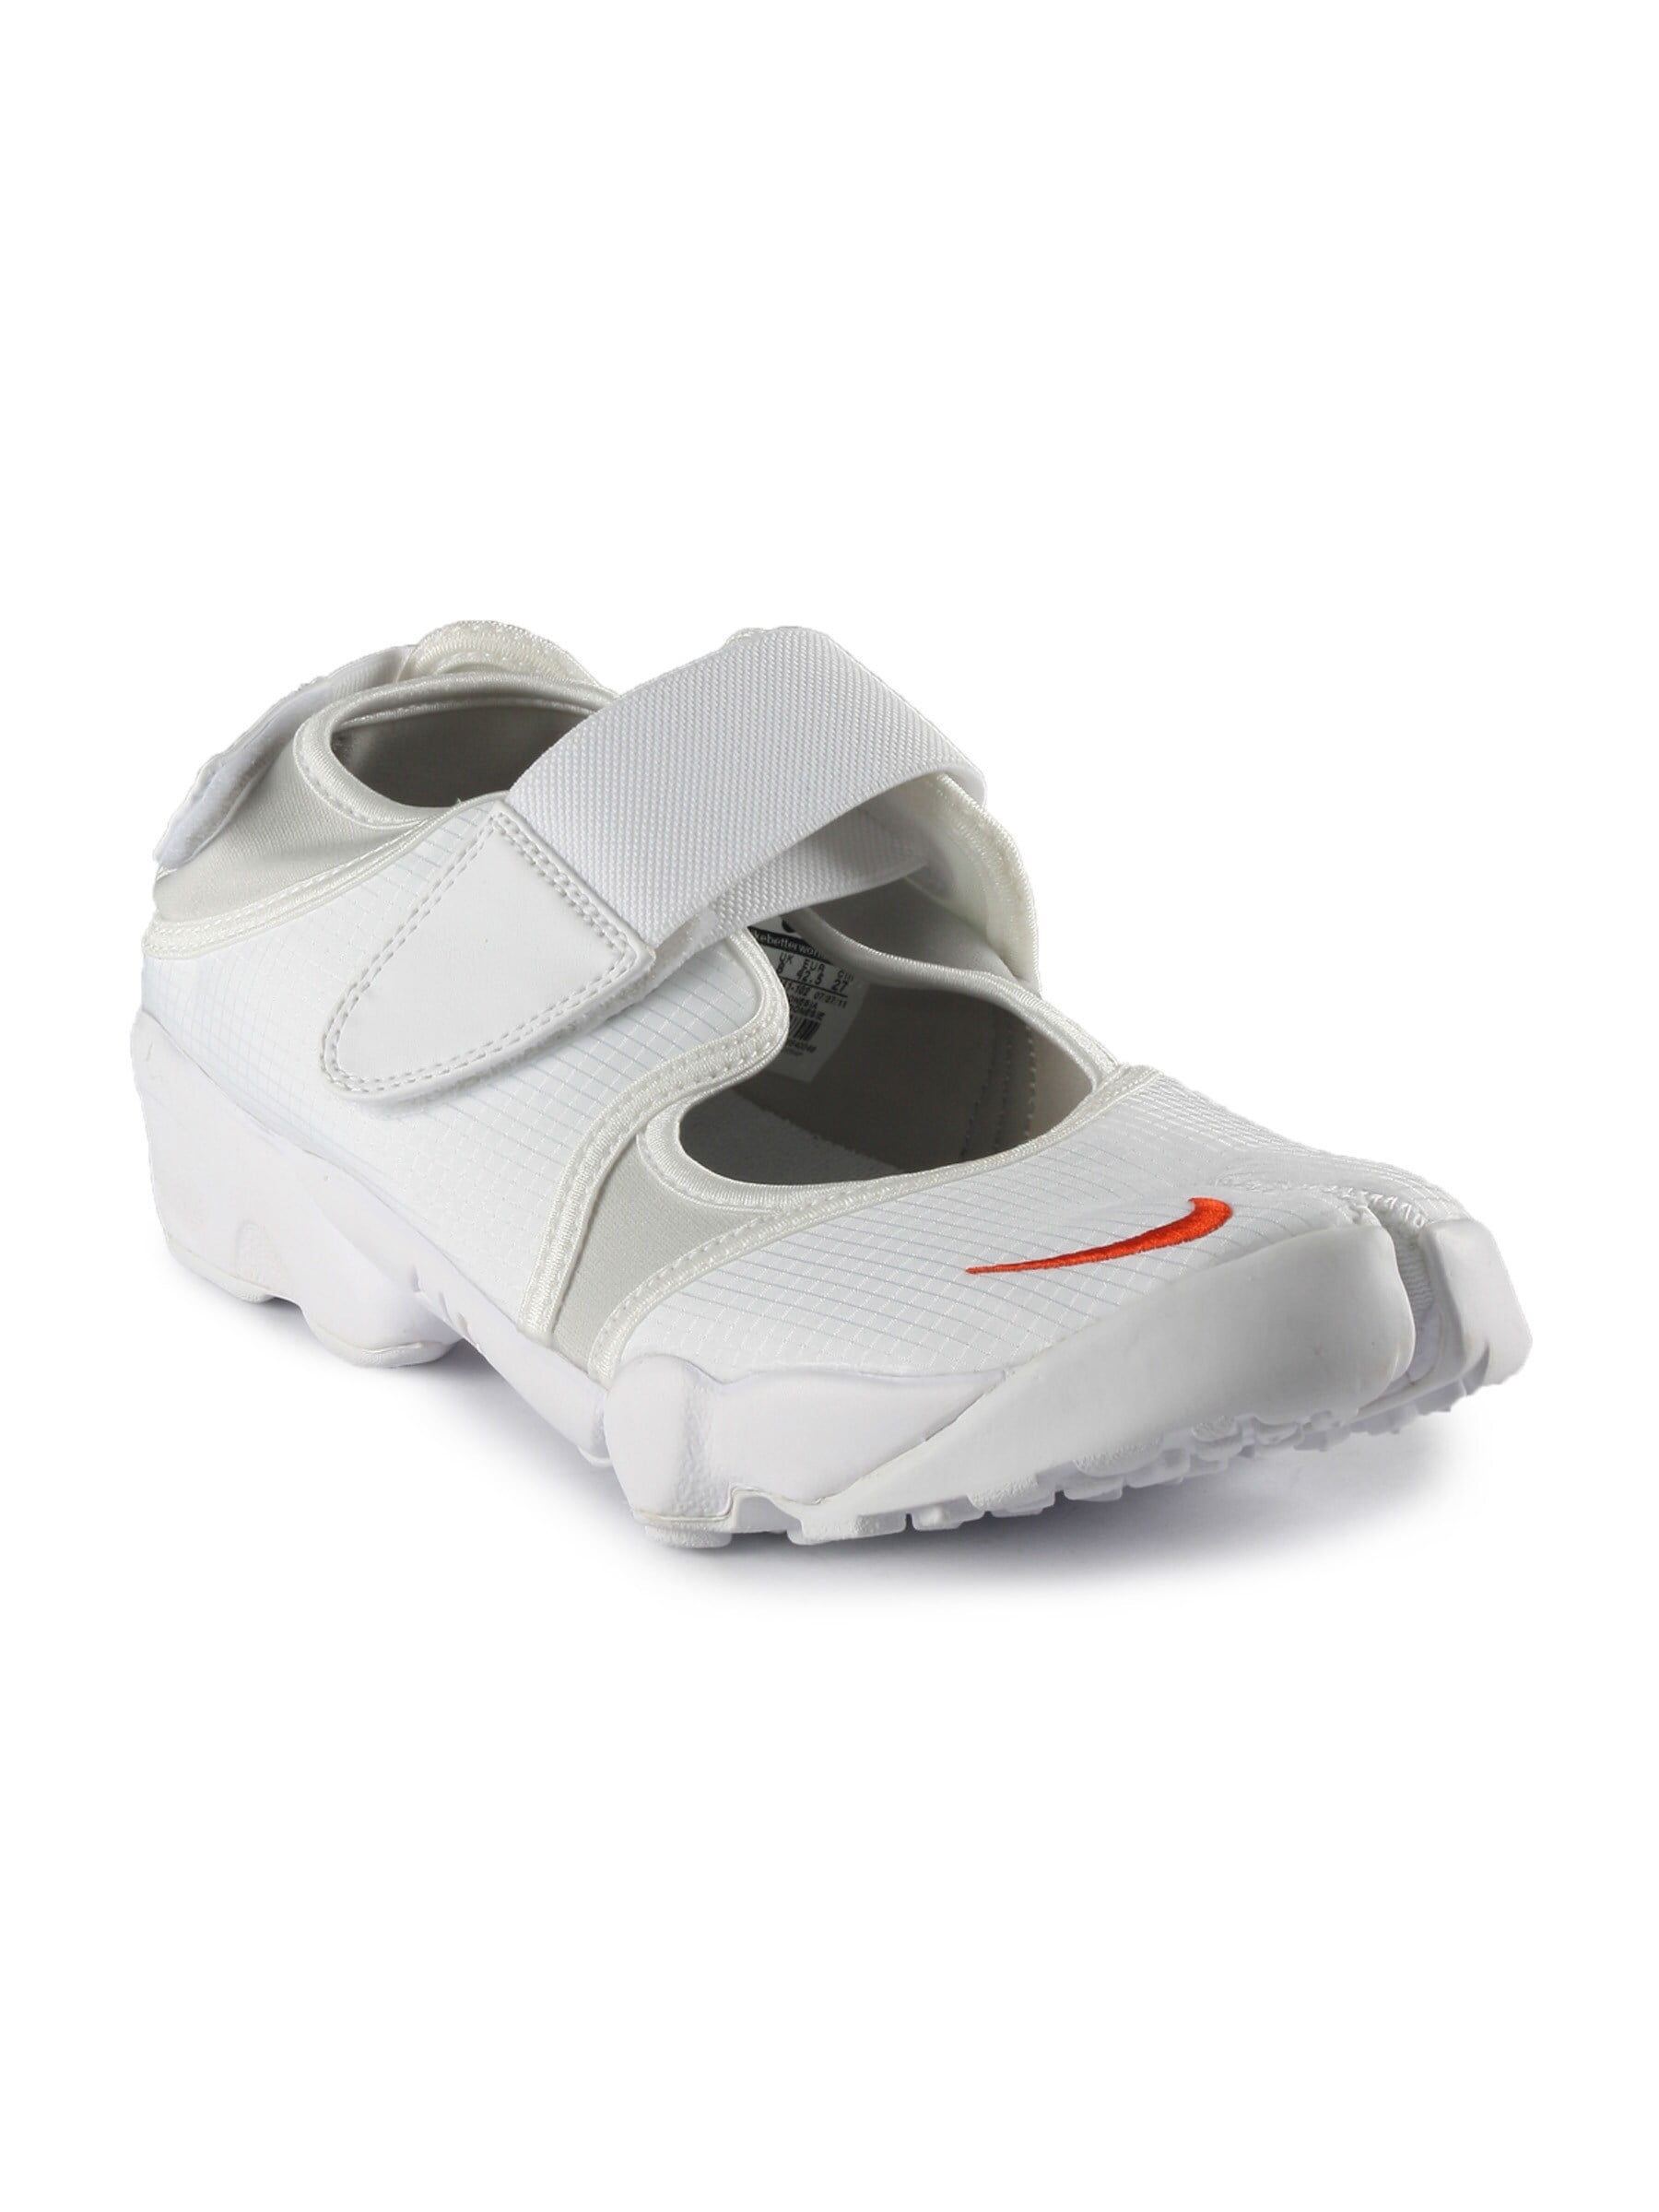 Nike Men Air Rift MTR White Casual Shoe